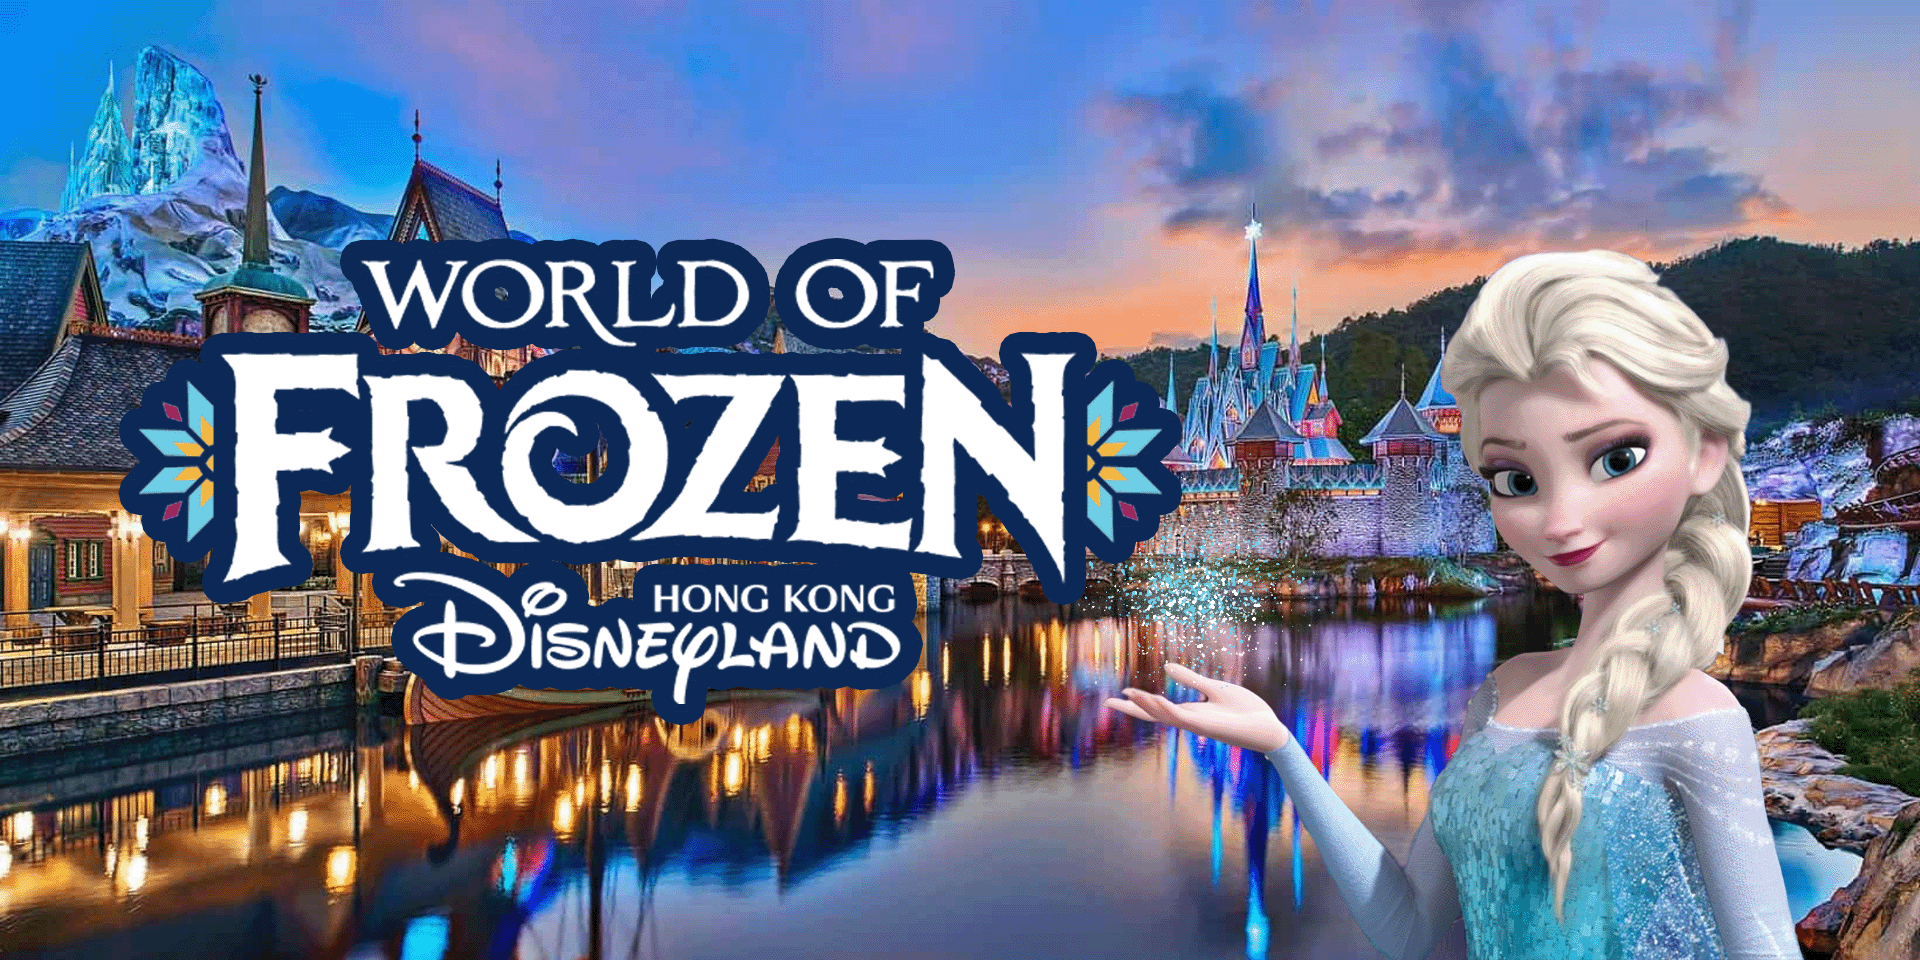 ฮ่องกงดิสนีย์แลนด์เปิดโซนใหม่ World of Frozen